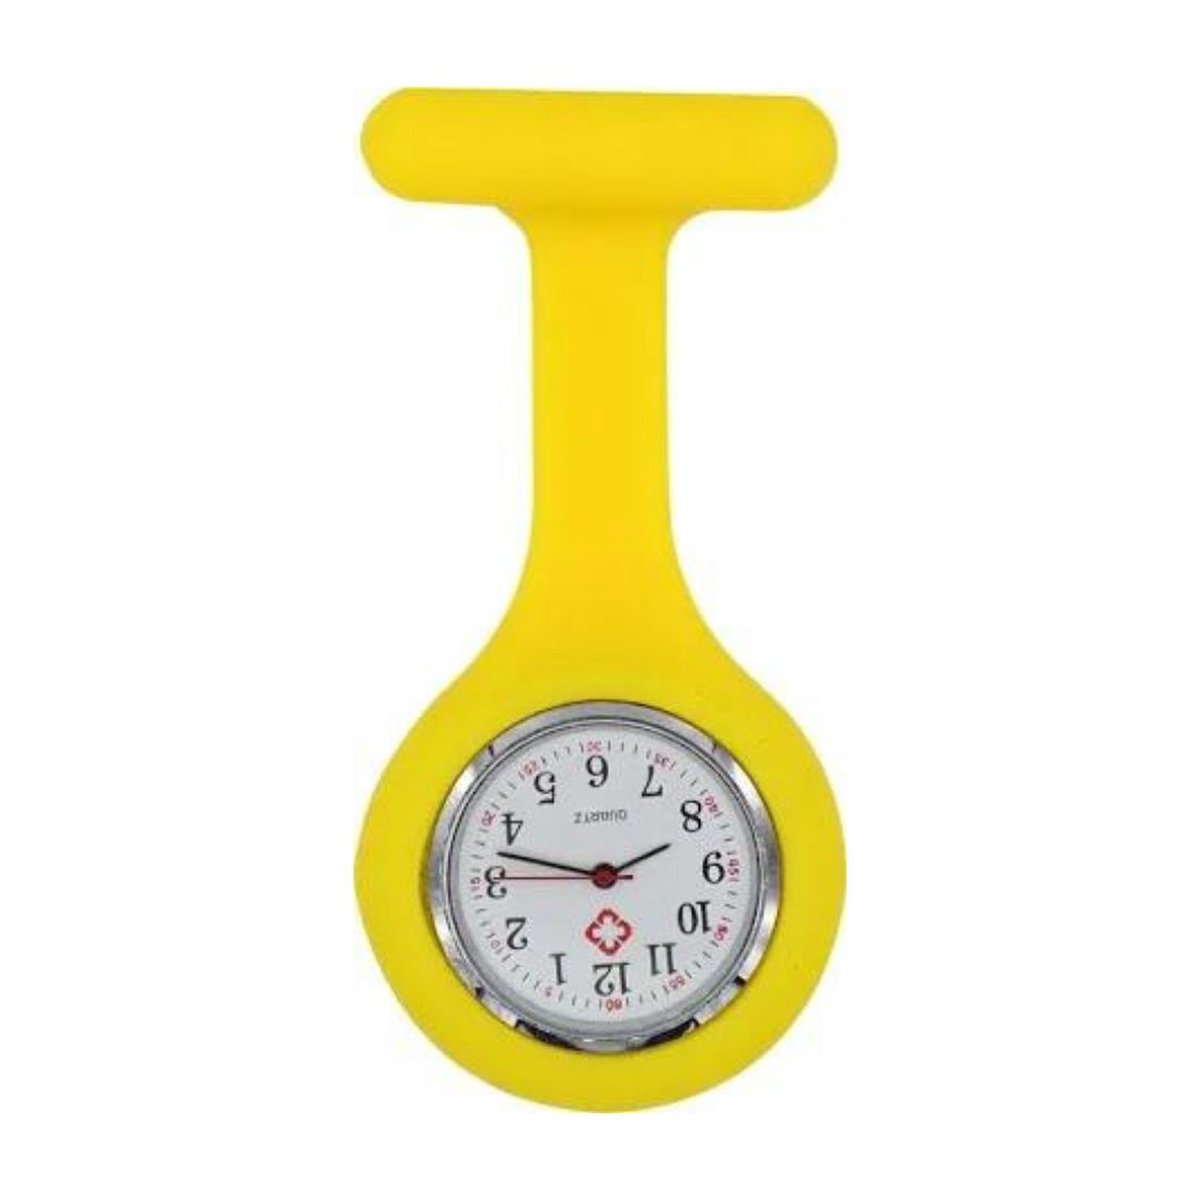 Jouw medische shop™ - nurse watch - verpleegsterhorloge - zusterhorloge - horloge - siliconen - yellow - geel